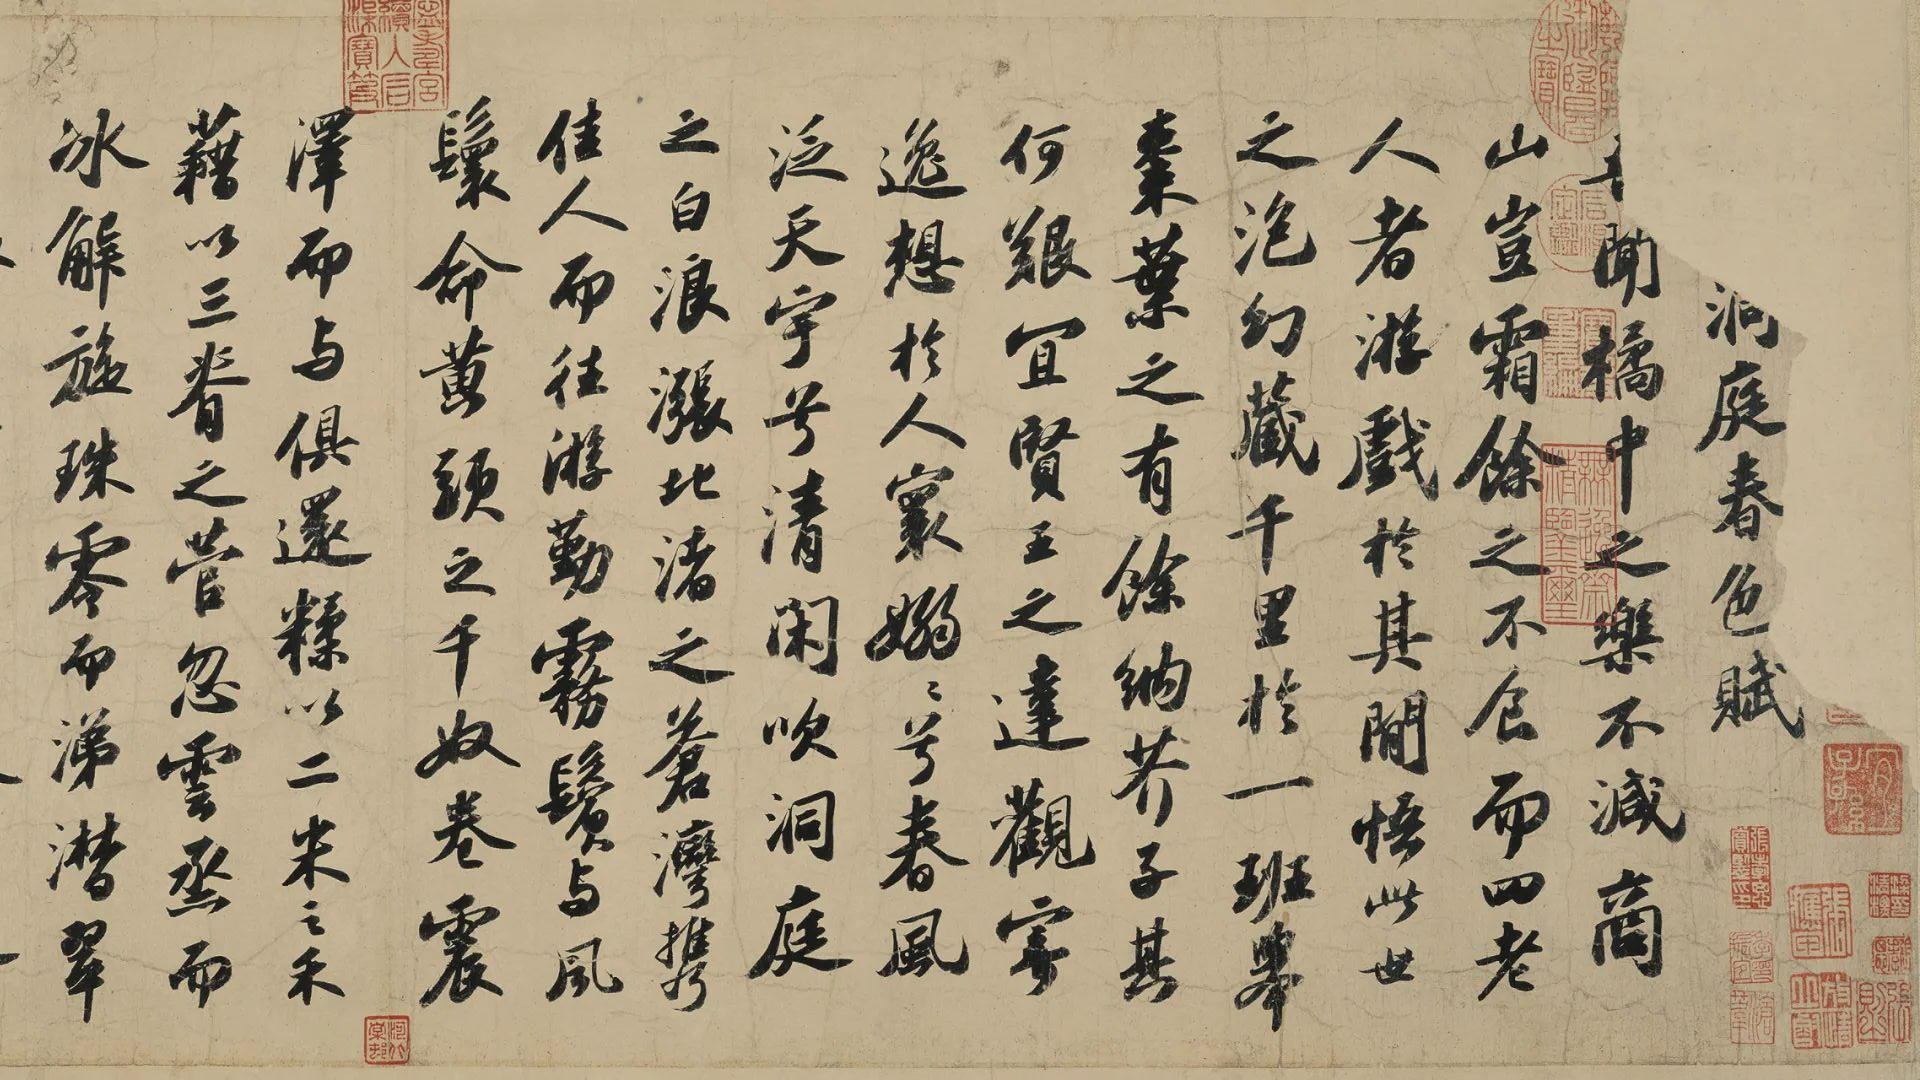 一纸黄州寒食帖,写尽多少沧桑事,苏轼在清明节写出天下第三行书